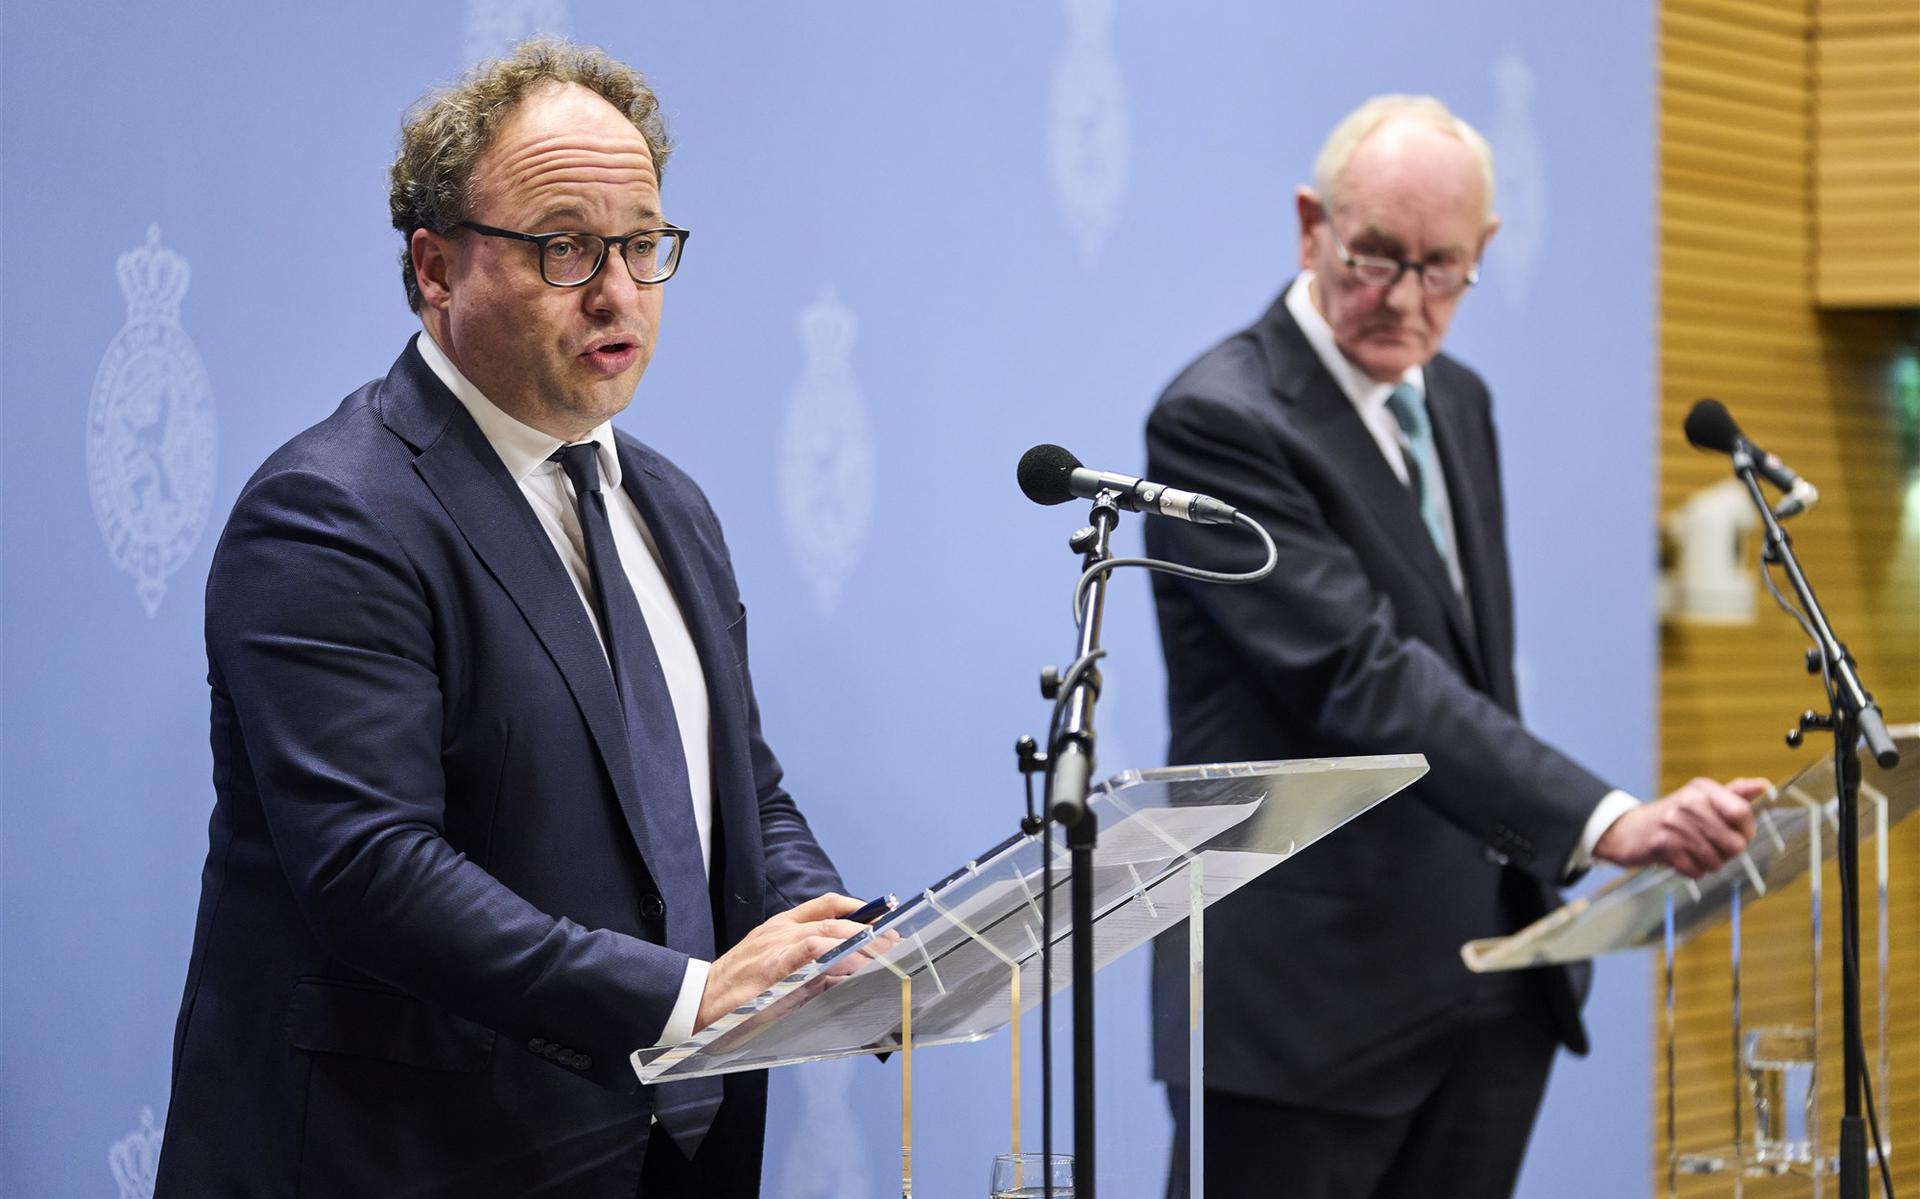 Informateurs Wouter Koolmees (links) en Johan Remkes geven een toelichting op de stand van zaken van de kabinetsformatie.